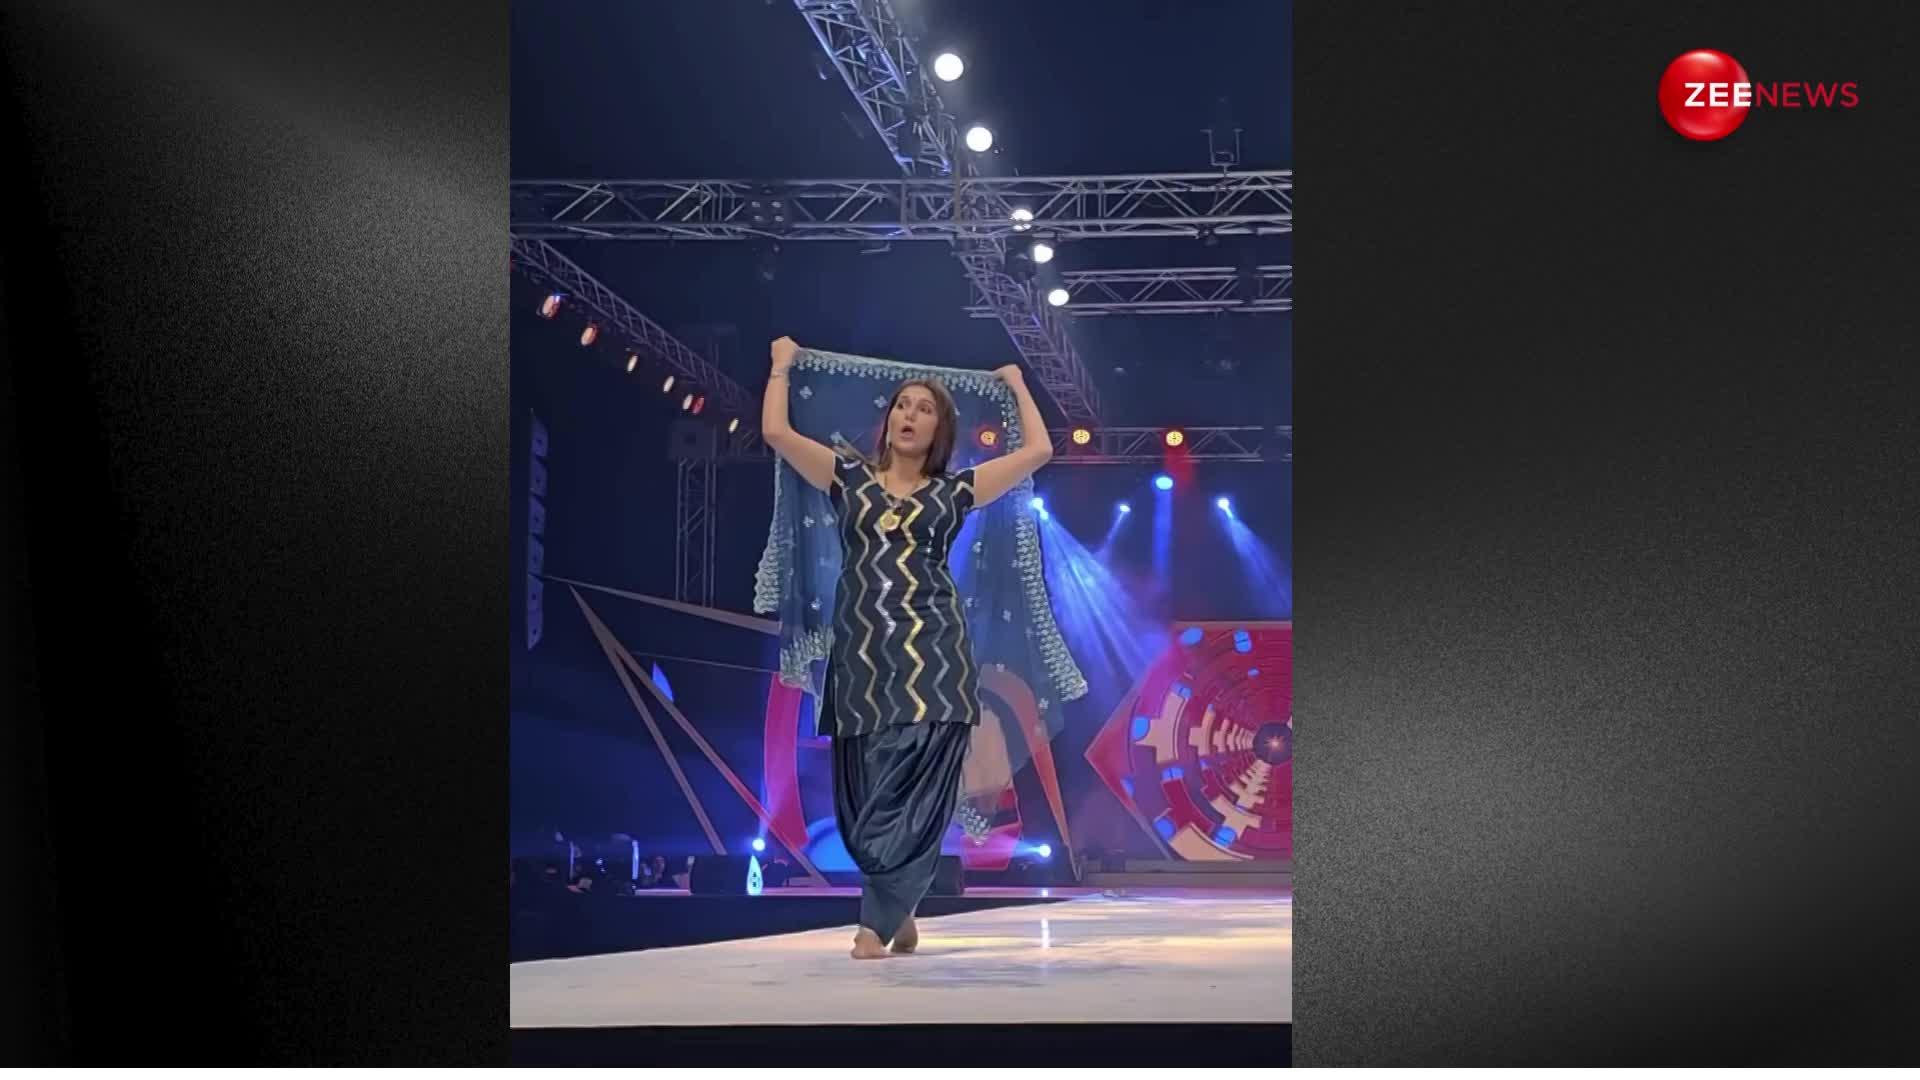 'ऐसी लाई चुंदड़ी' गाने पर Sapna Choudhary ने दिखाया खतरनाक डांस, देखने उमड़ी लाखों लोगों की भीड़